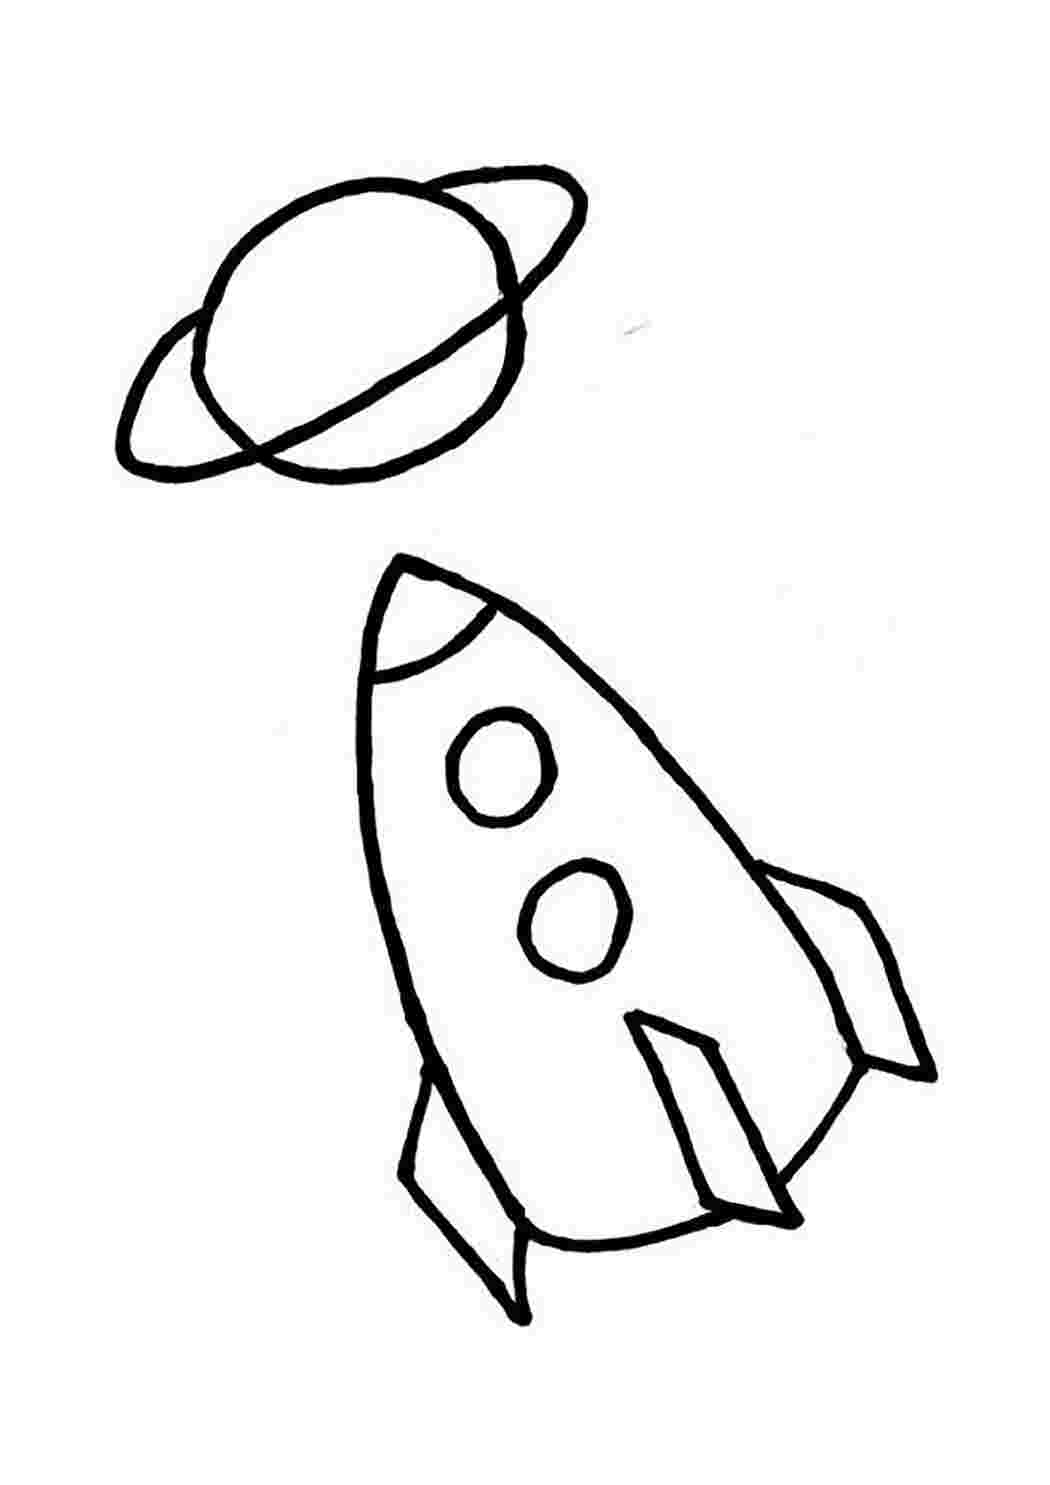 Ракета срисовать. Ракета раскраска. Ракета для рисования для детей. Ракета рисунок. Ракета раскраска для детей.